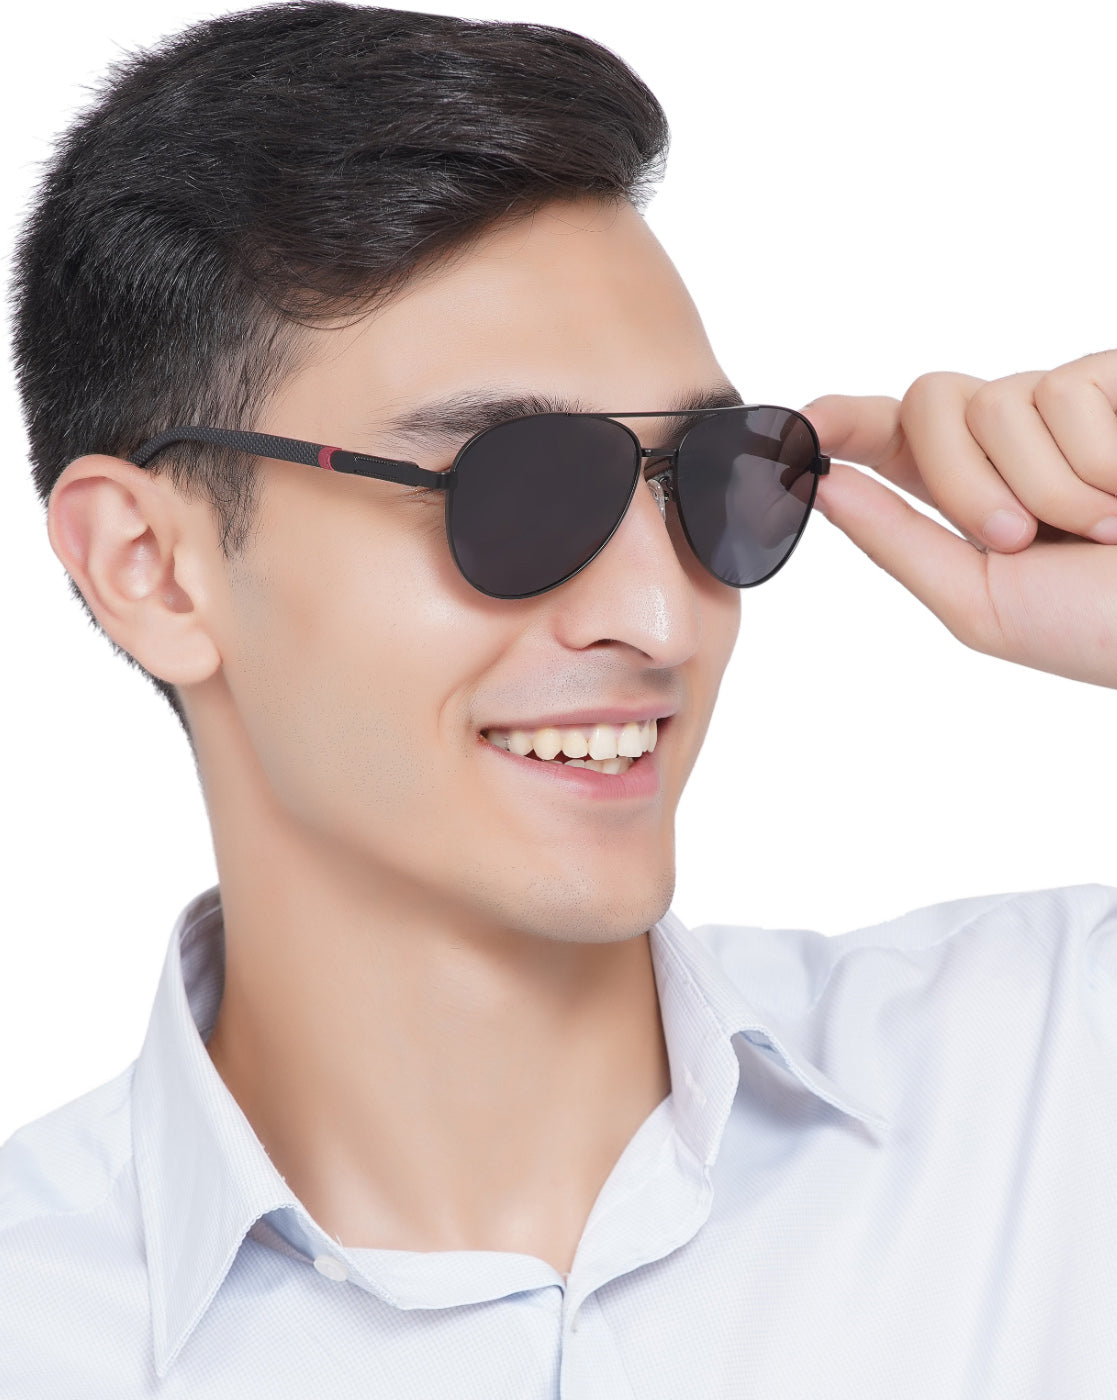 The Best Designer Aviator Sunglasses for Men and Women - GlassesUSA.com blog